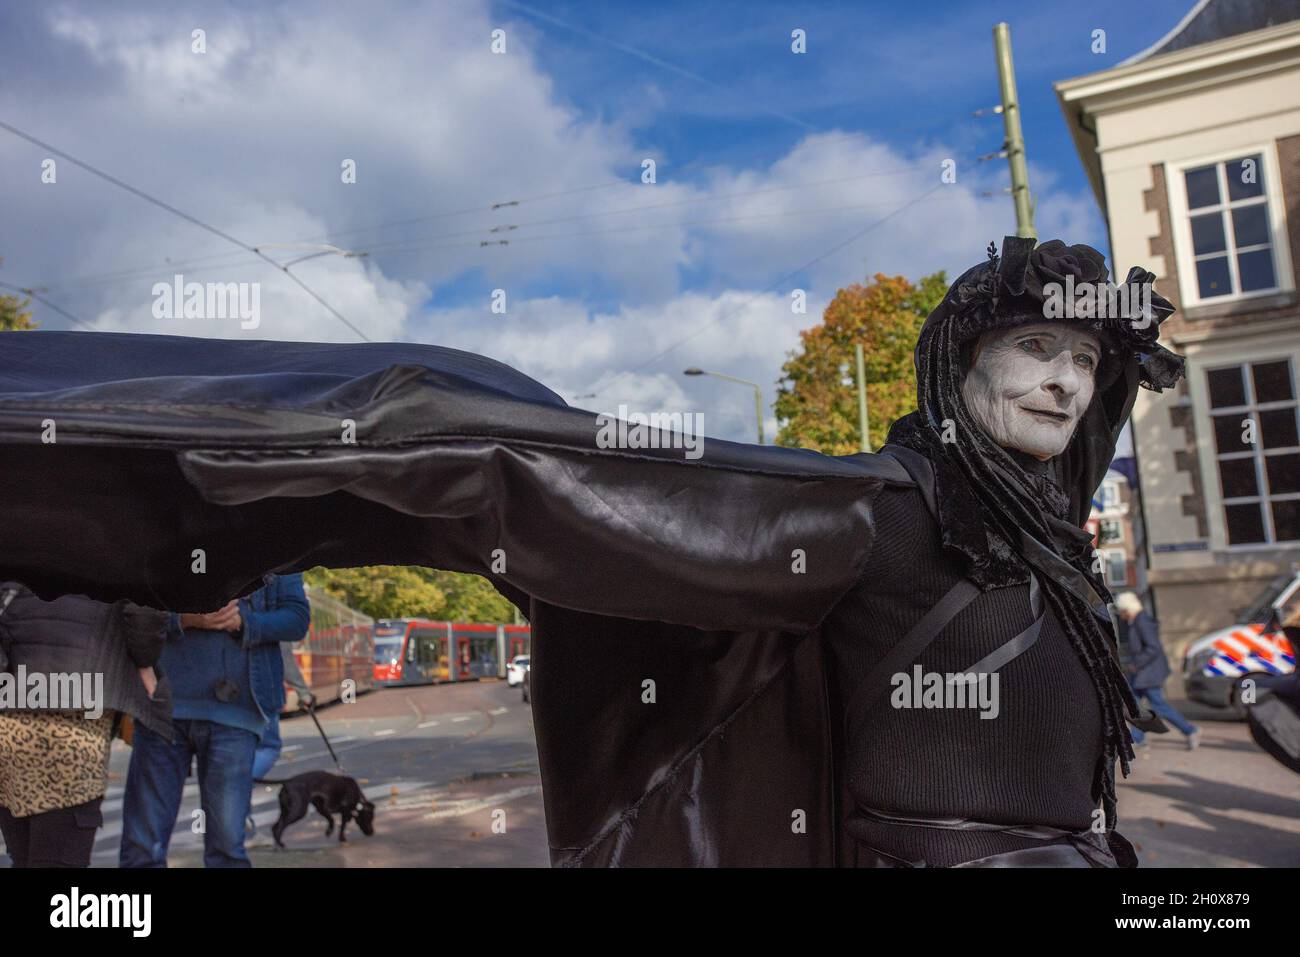 Der stille "Black-Rebel" des Aussterbungsaufstands steht während der Demonstration in der Nähe des niederländischen parlamentsgebäudes.am vierten Tag der Klimaaktivitäten hielten die Demonstranten des Aussterbungsaufstands einen stillen marsch ab, um den Opfern der Klimakrise zu gedenken. Hundertfünfzig Rebellen der Aussterbungsrebellion, meist in schwarzer Kleidung, gingen schweigend auf einem vier Kilometer langen marsch durch die Straßen von Den Haag. Sie trugen Plakate, die die Opfer des extremen Wetters im vergangenen Jahr betonten. Den stillen Protest führten die „Black-Rebels“ an, die den Trauerzug der Malie begleiteten Stockfoto